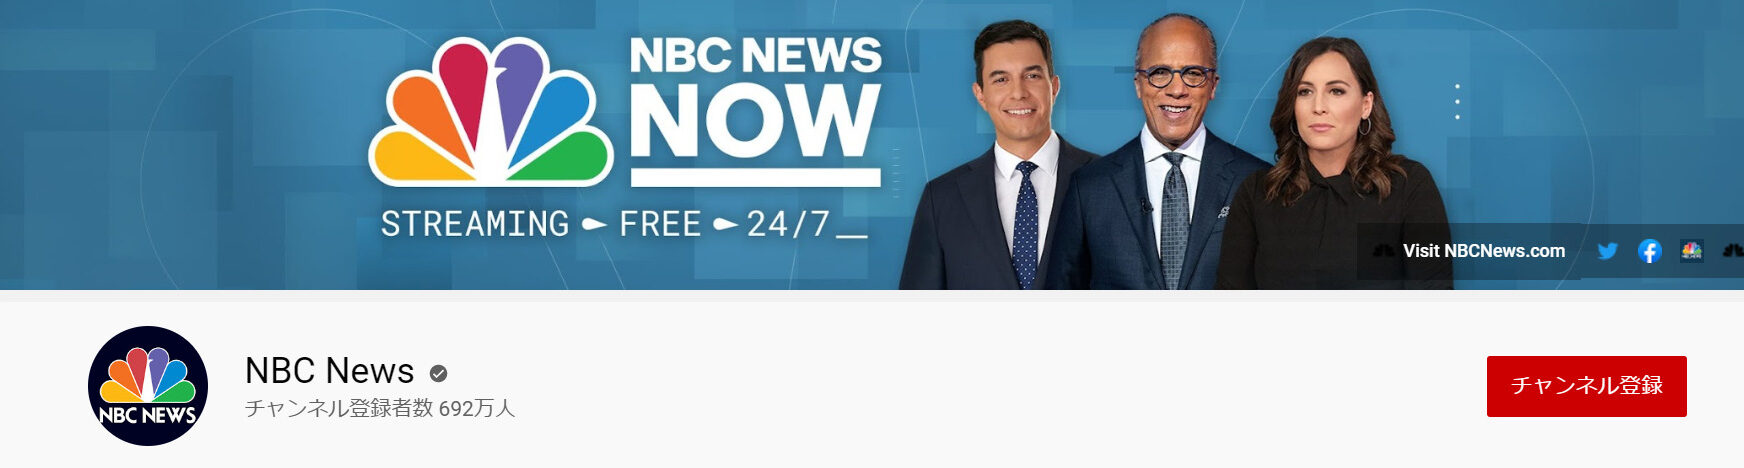 5.NBC News